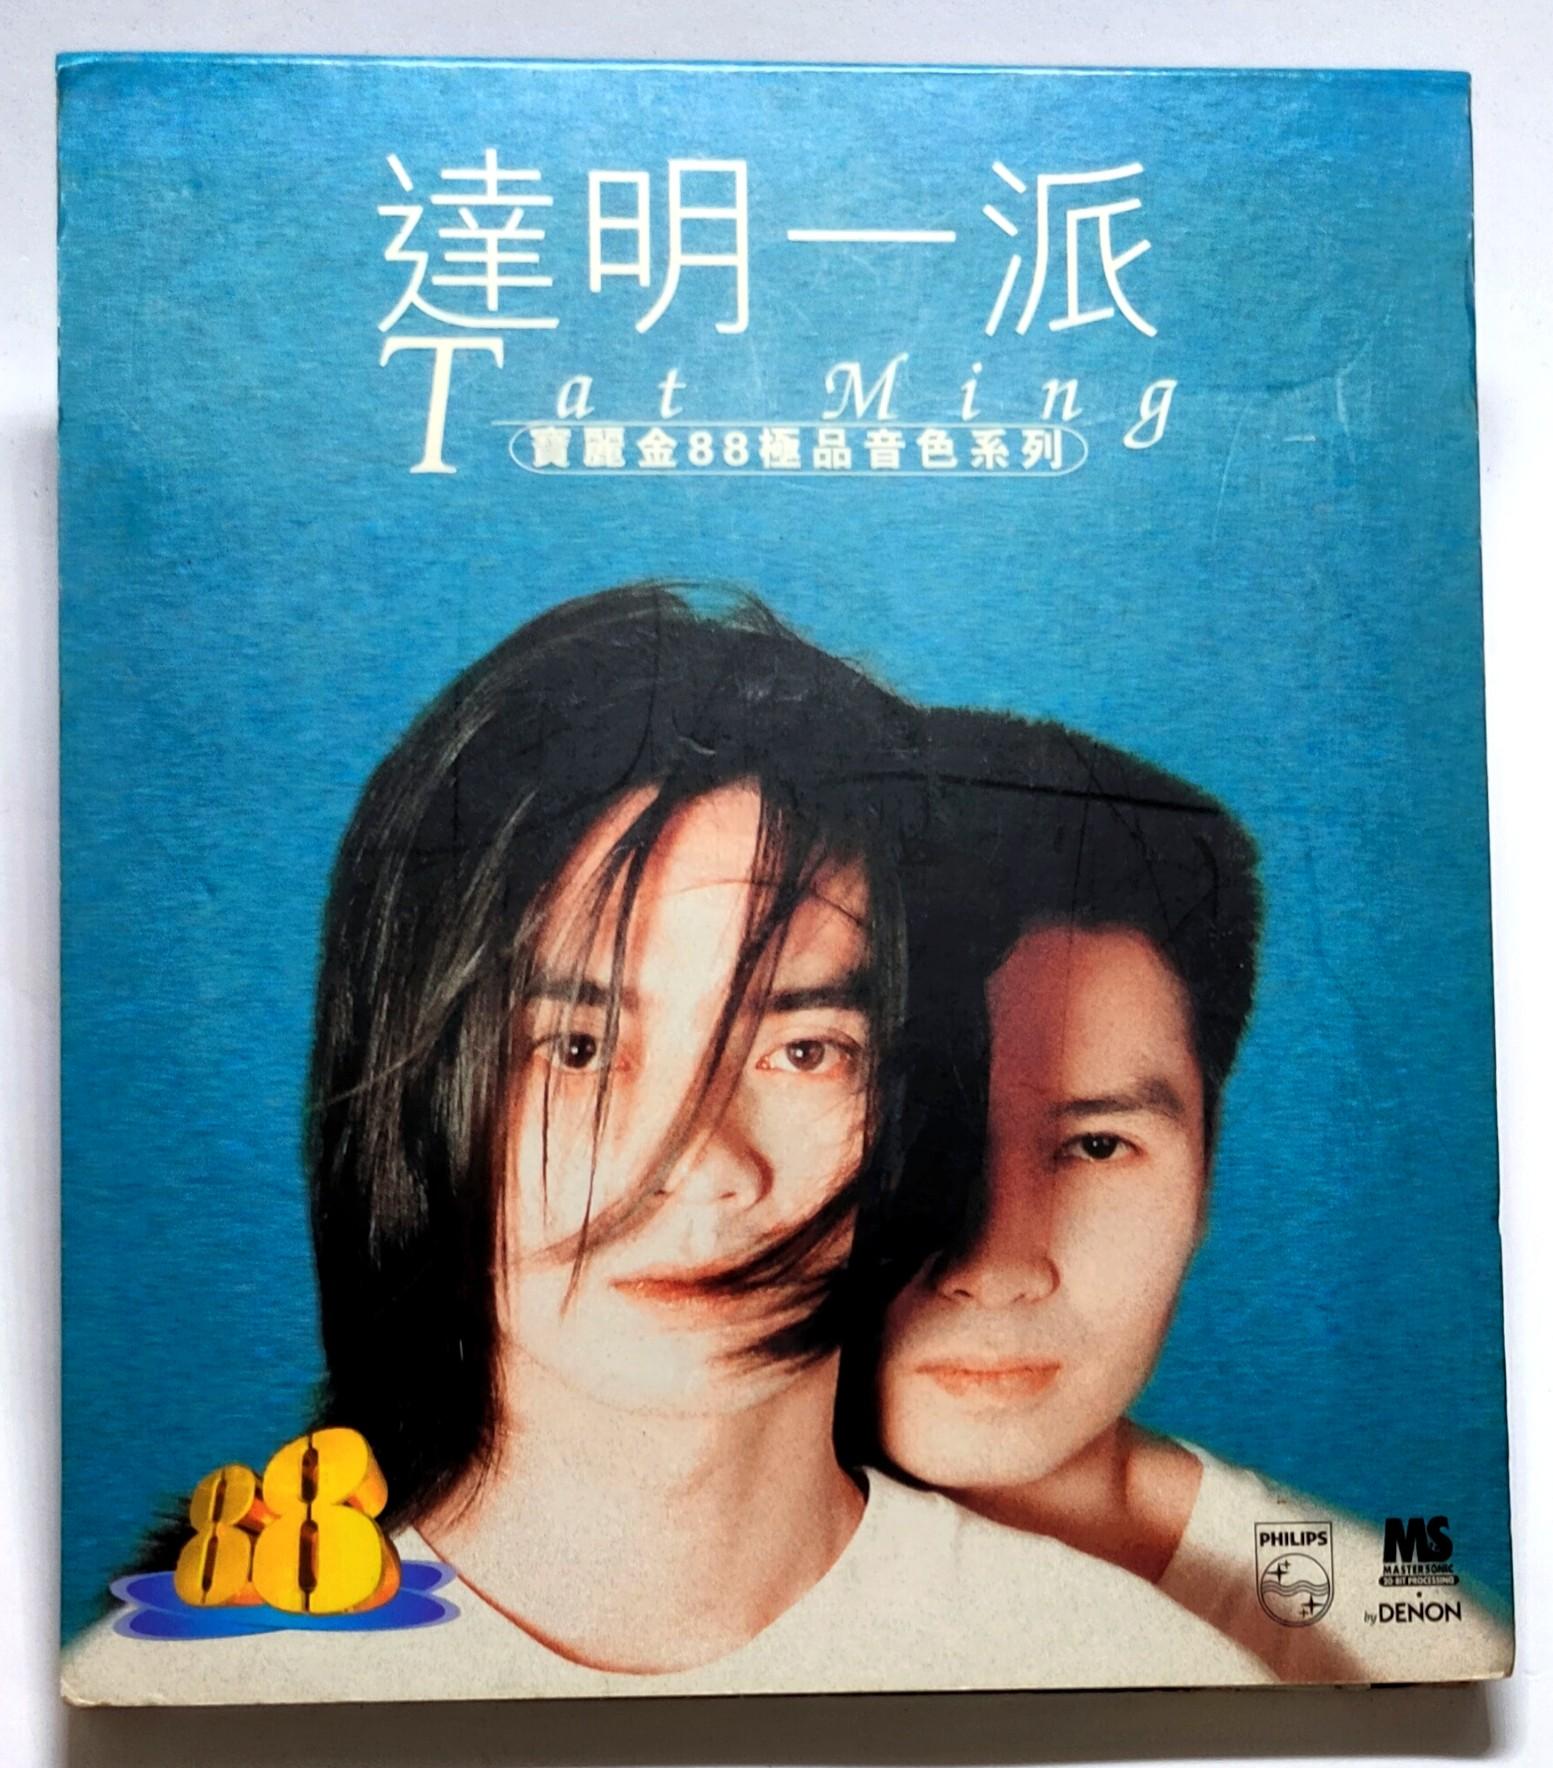 宝丽金88极品音色系列 - 达明一派 (CD, HK, 1996)